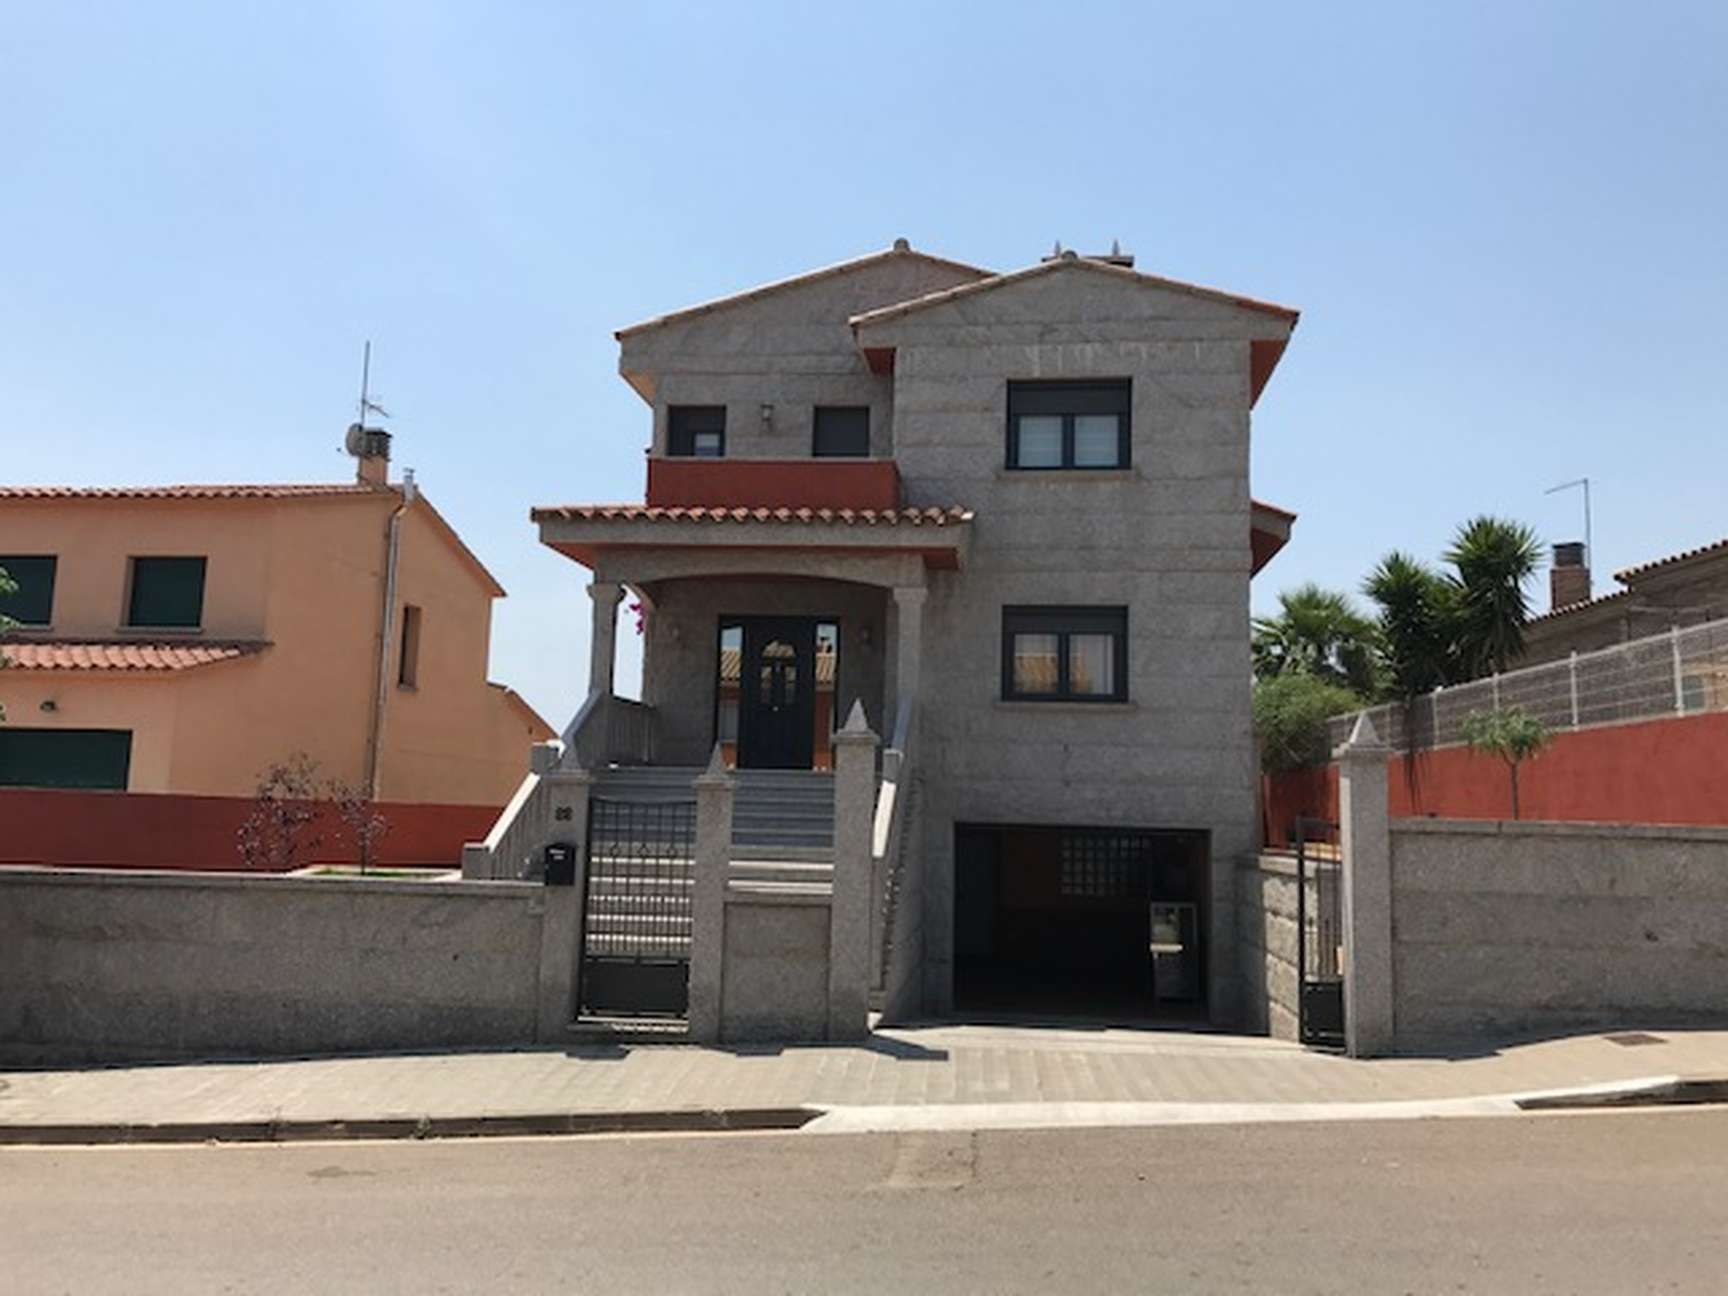 Lladó, schönes Haus zum Verkauf, rustikal und modern